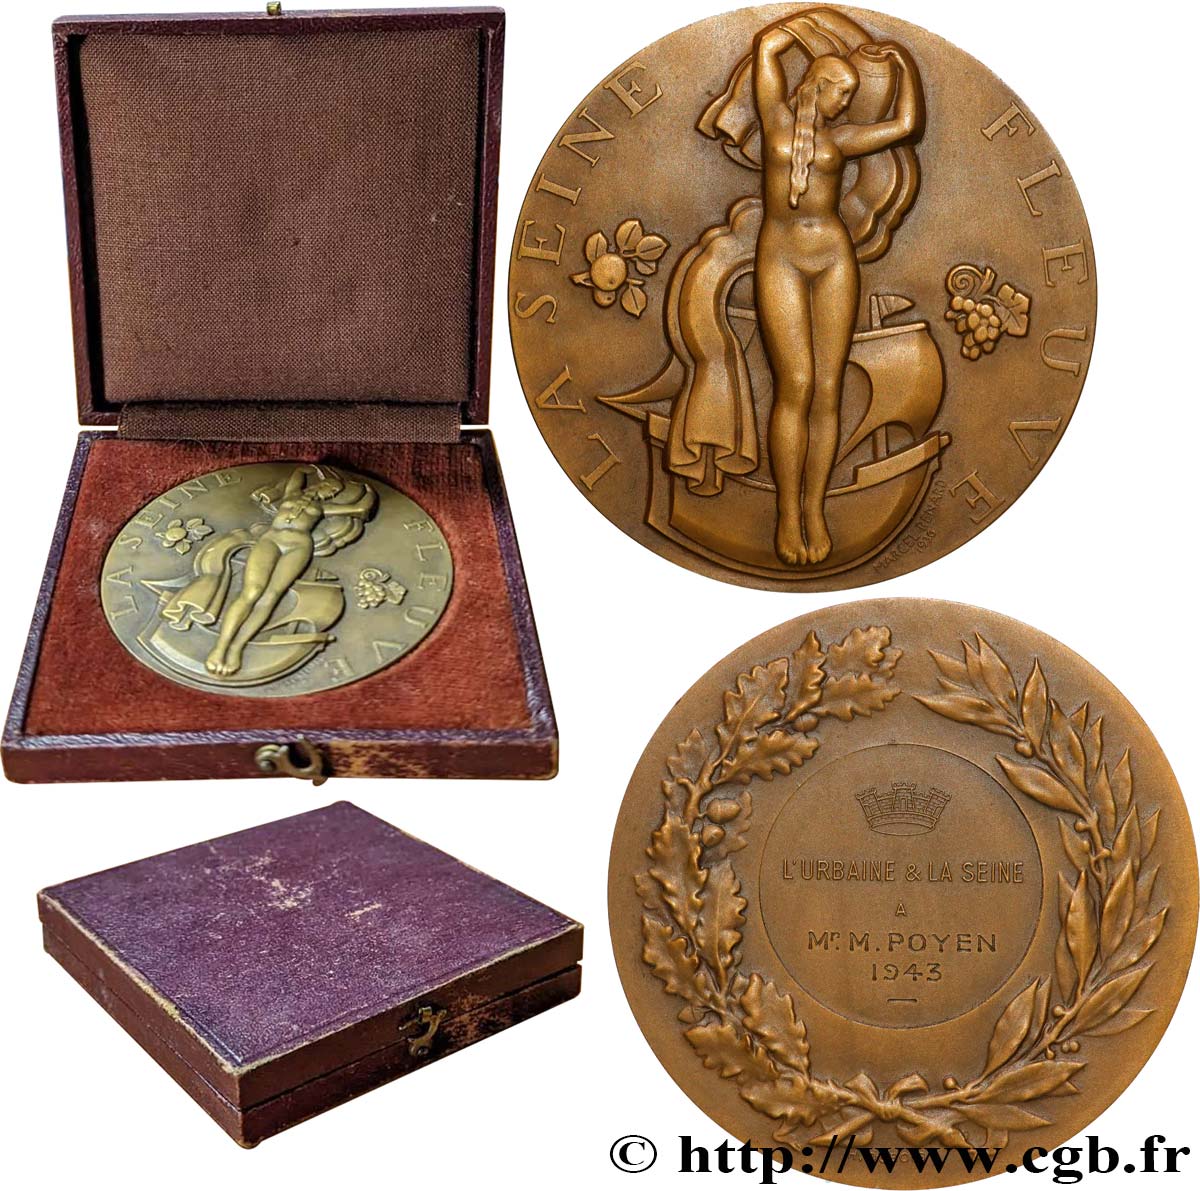 ETAT FRANÇAIS Médaille, La Seine Fleuve, L’Urbaine et la Seine AU